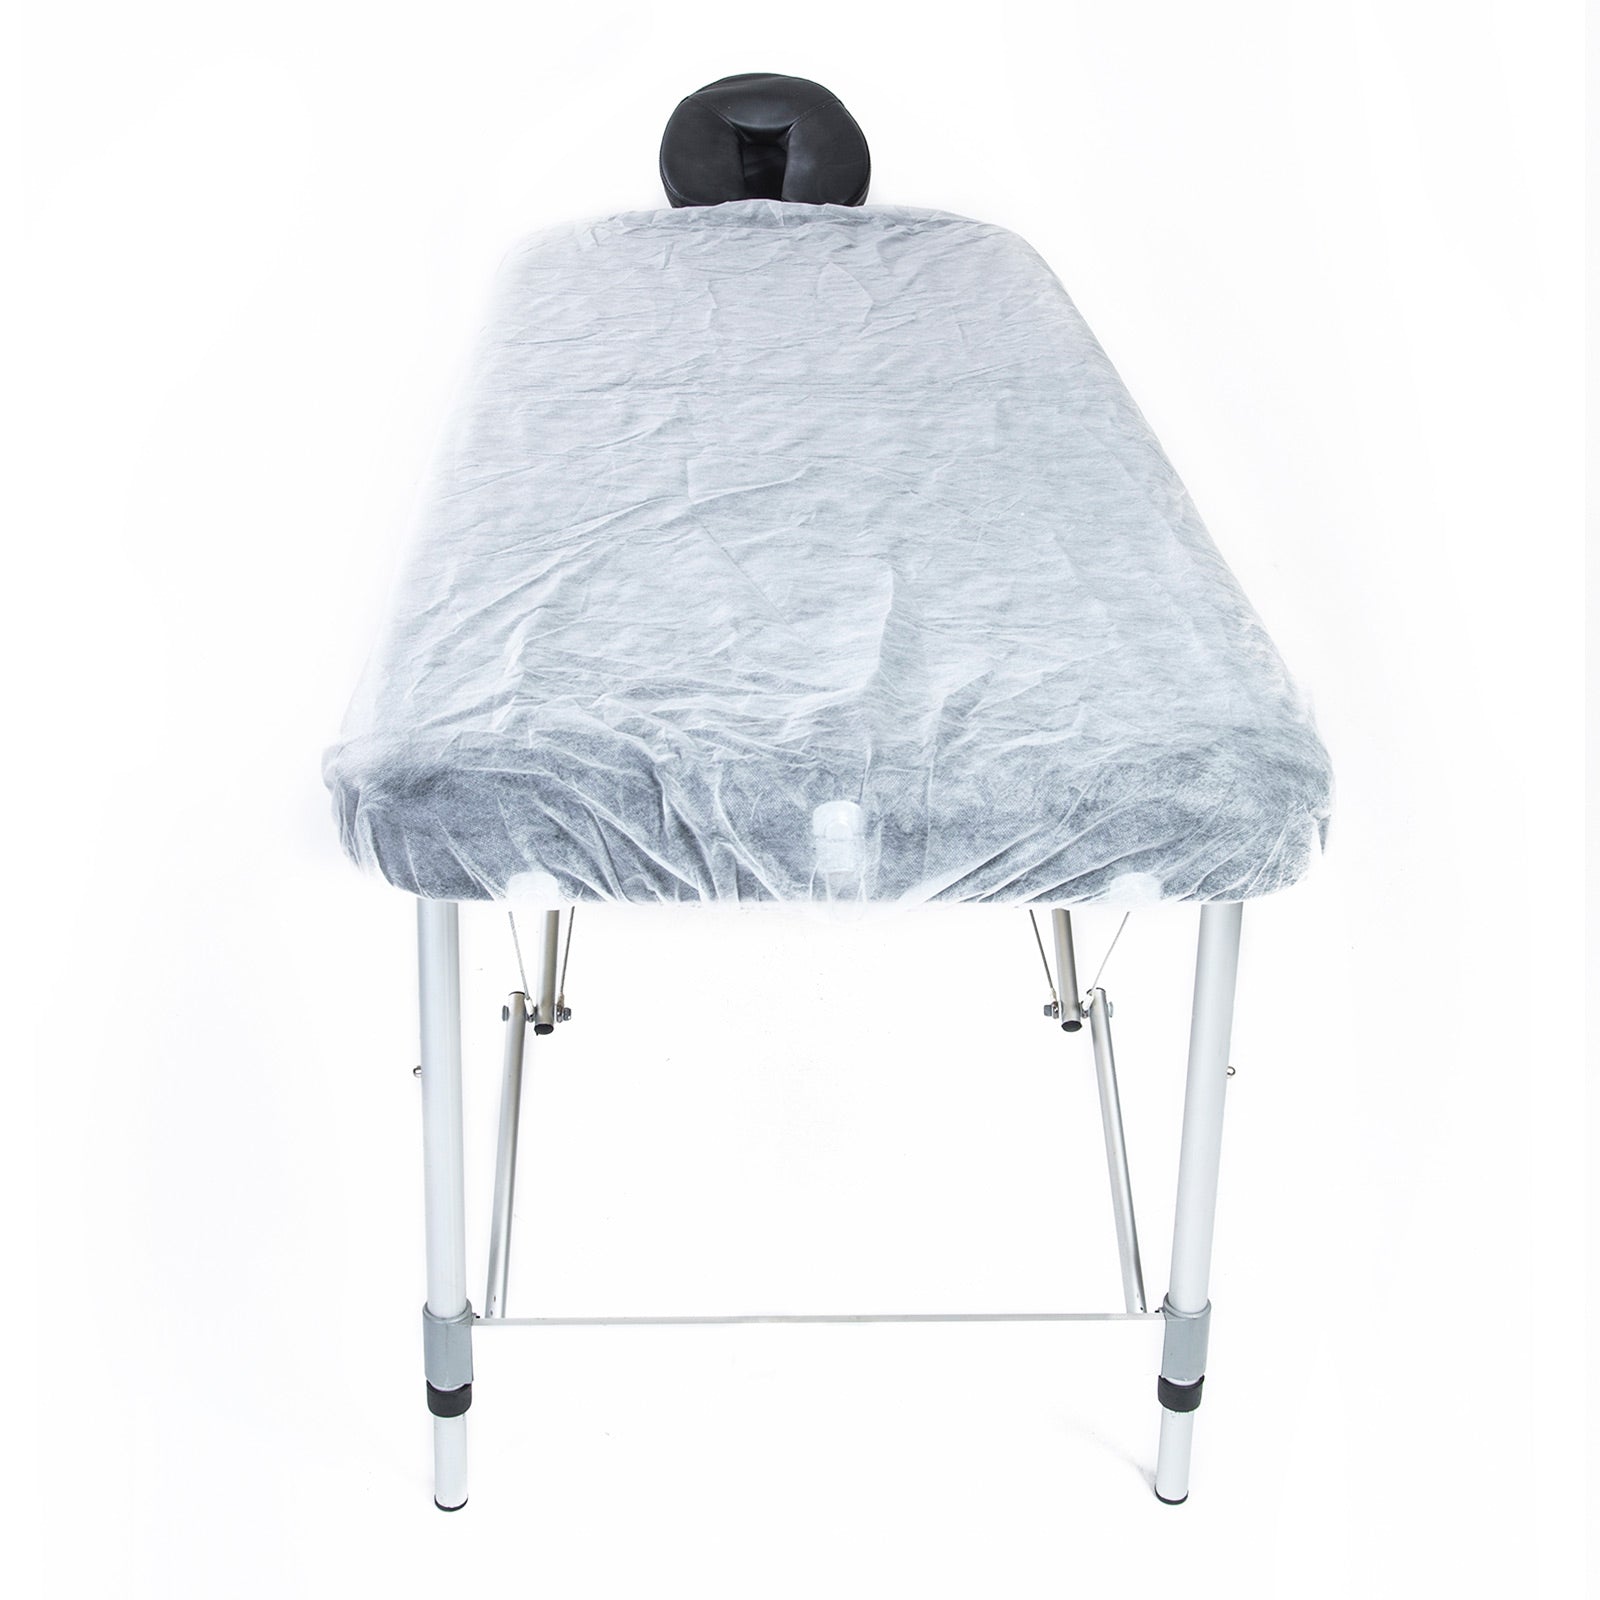 60pcs Disposable Massage Table Sheet Cover 180cm x 75cm - image3